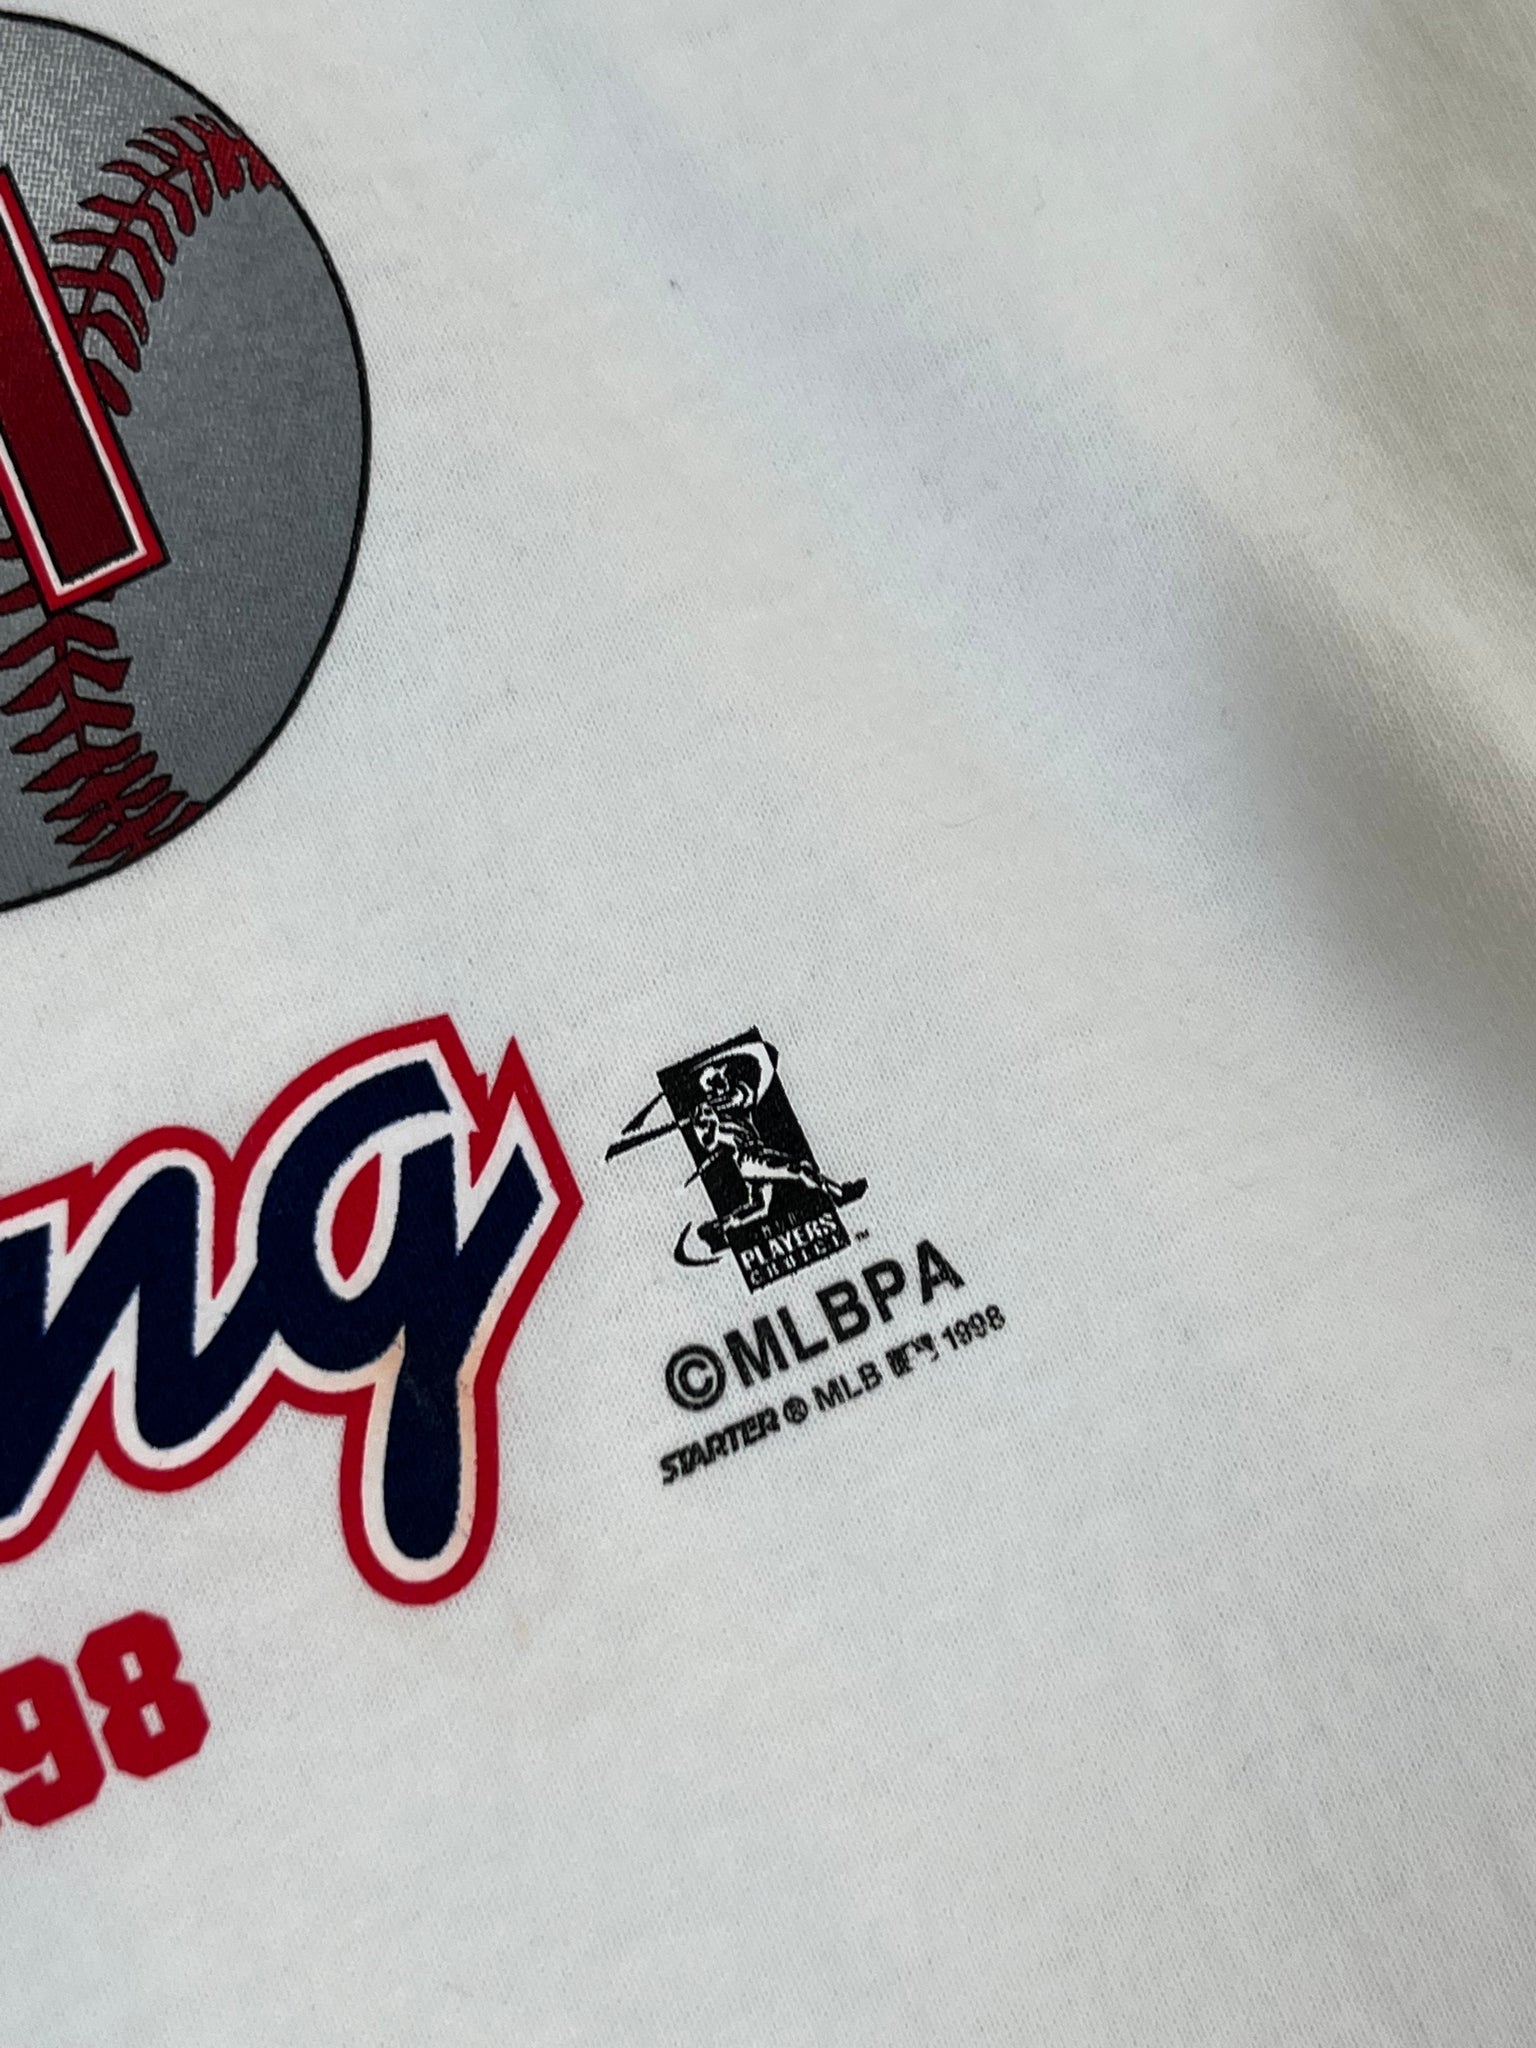 Vintage St. Louis Cardinals 1998 Mark McGwire Shirt Size X-Large